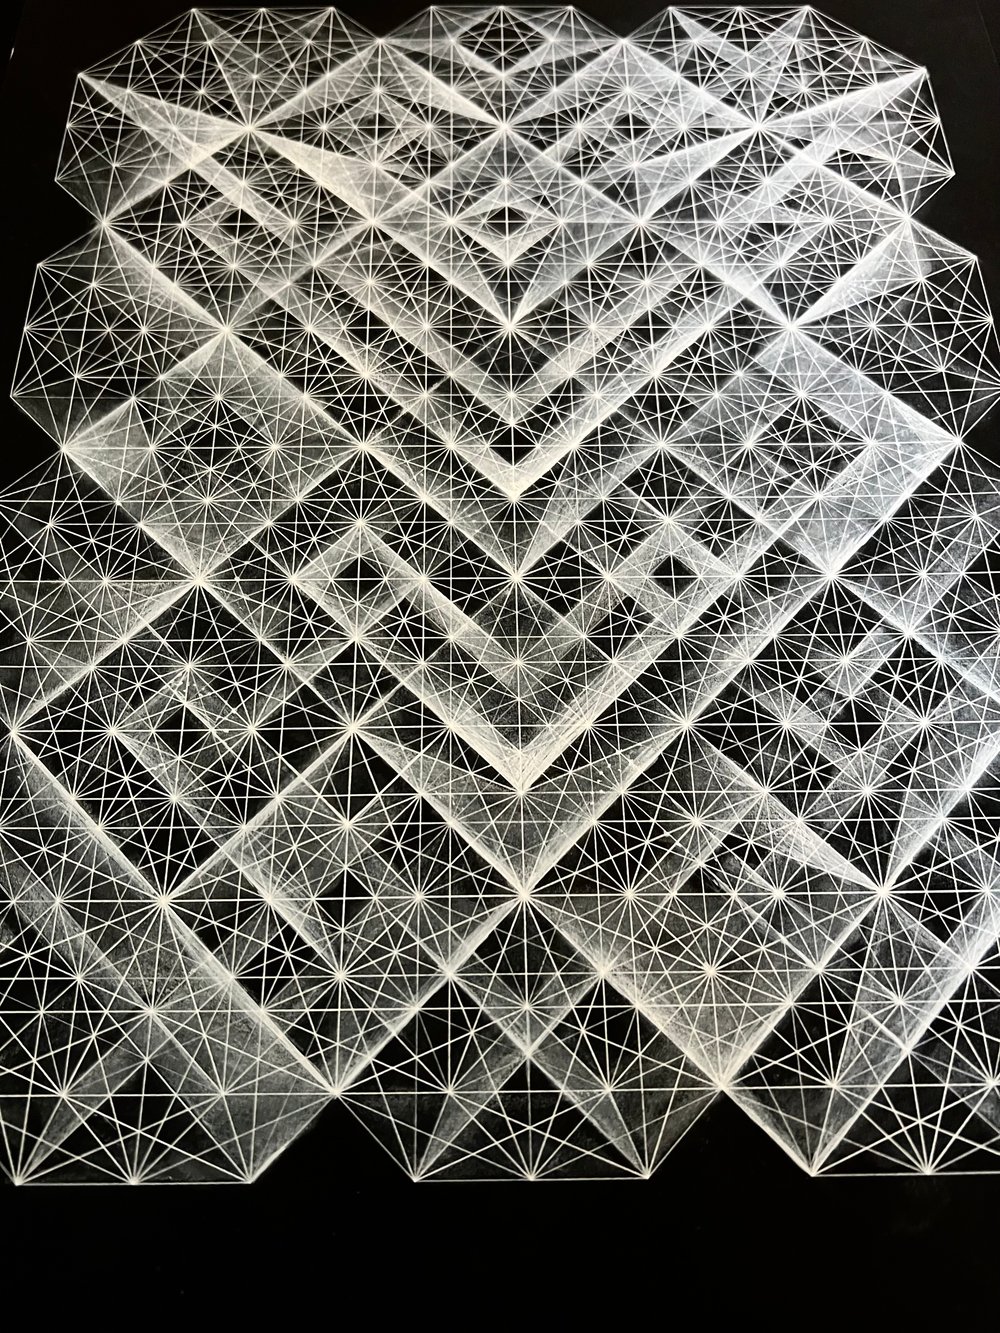 Octagonal lattice